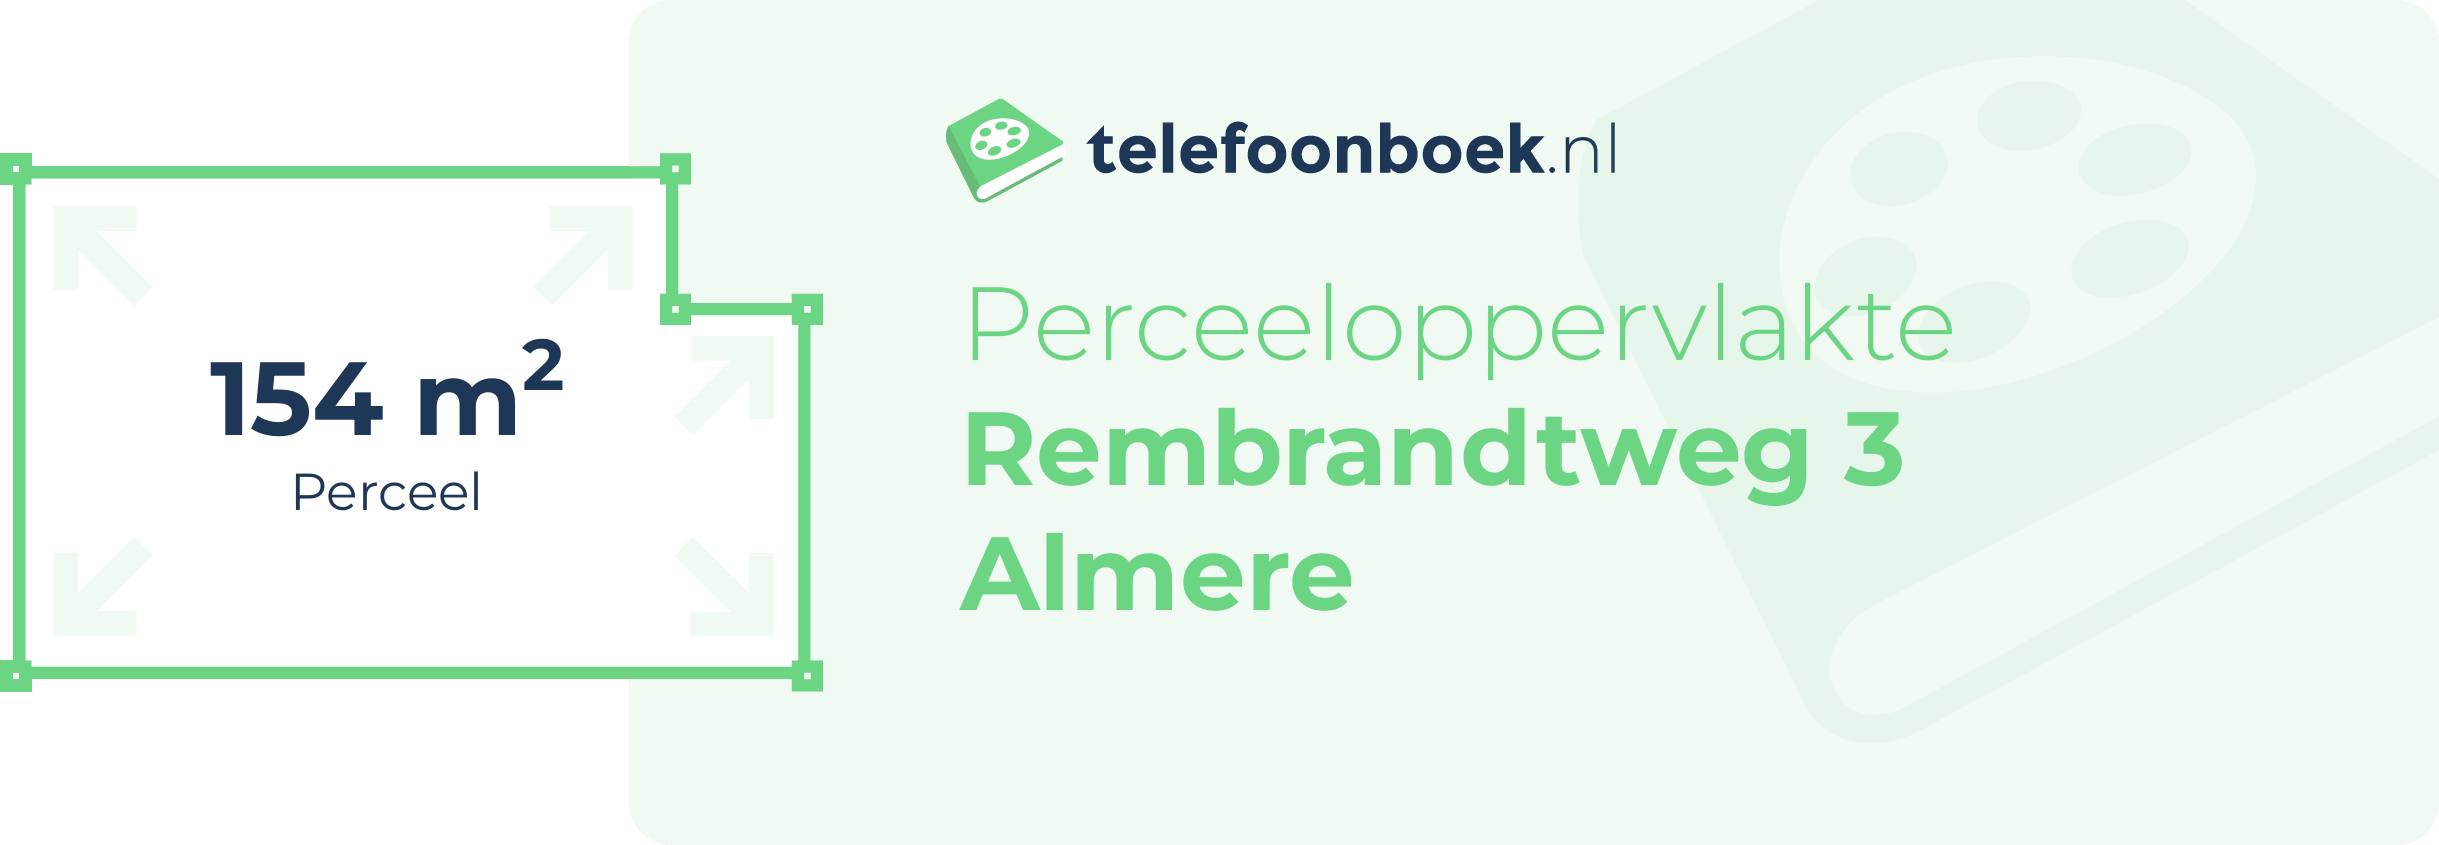 Perceeloppervlakte Rembrandtweg 3 Almere